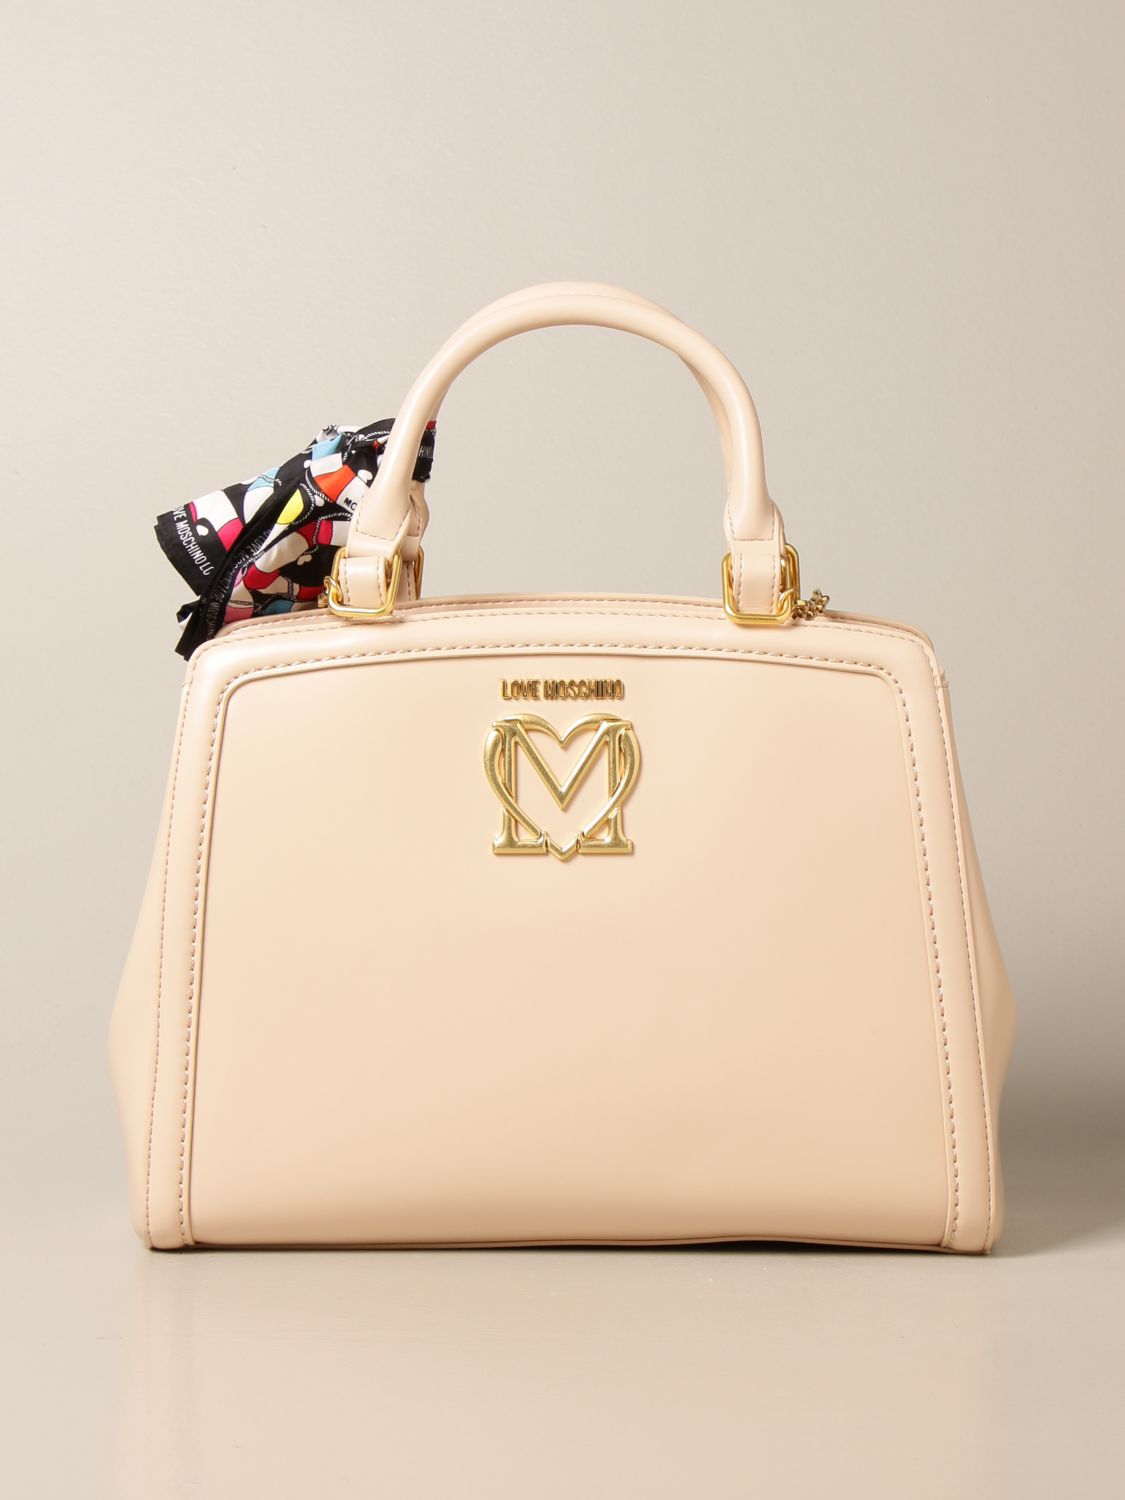 moshino handbag